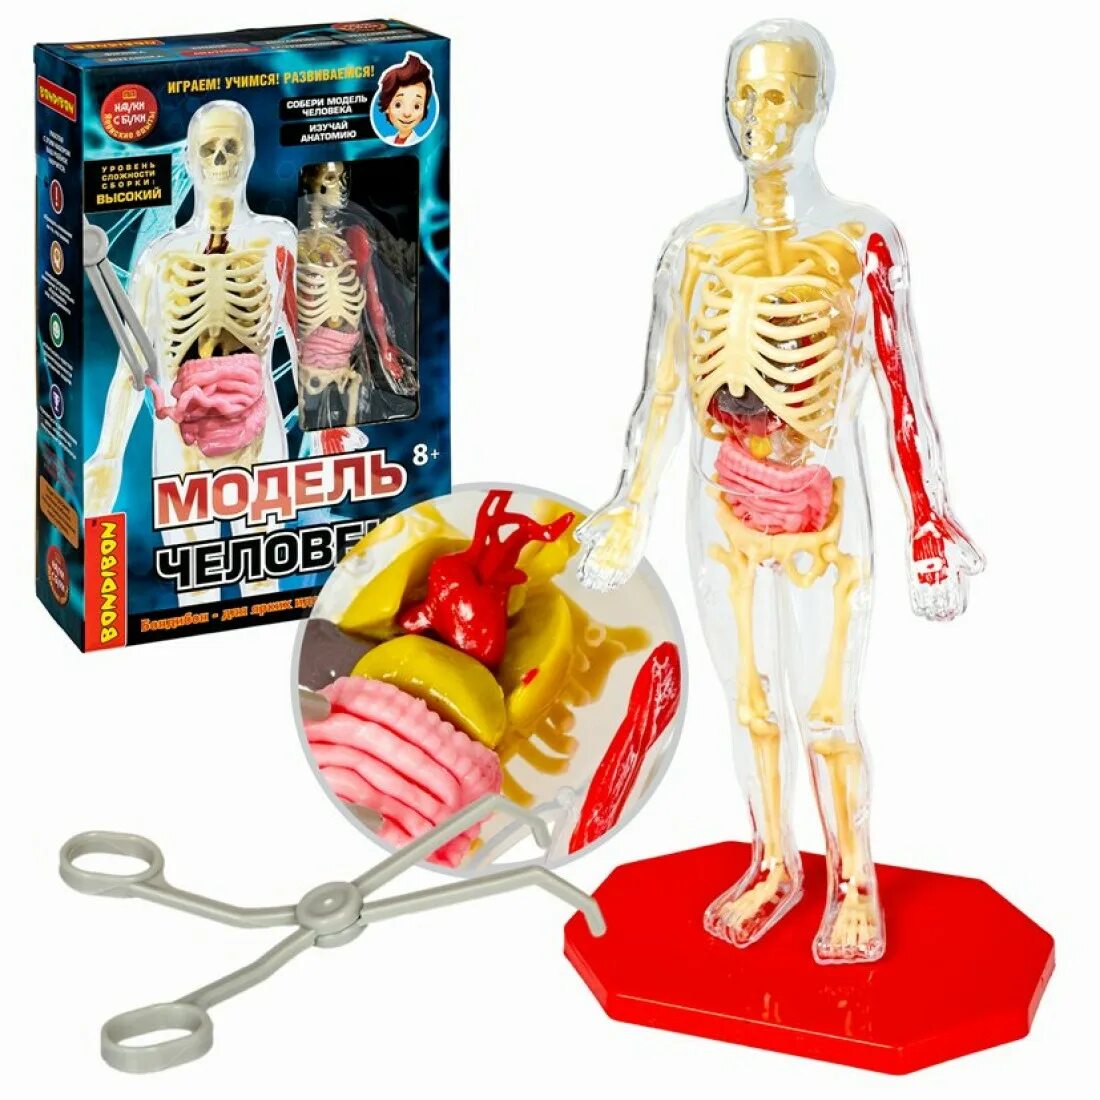 Человек вв. Игрушка скелет с органами. Анатомическая модель человека для детей научный опыт. Бондибон тело человека. Bondibon модель человека.